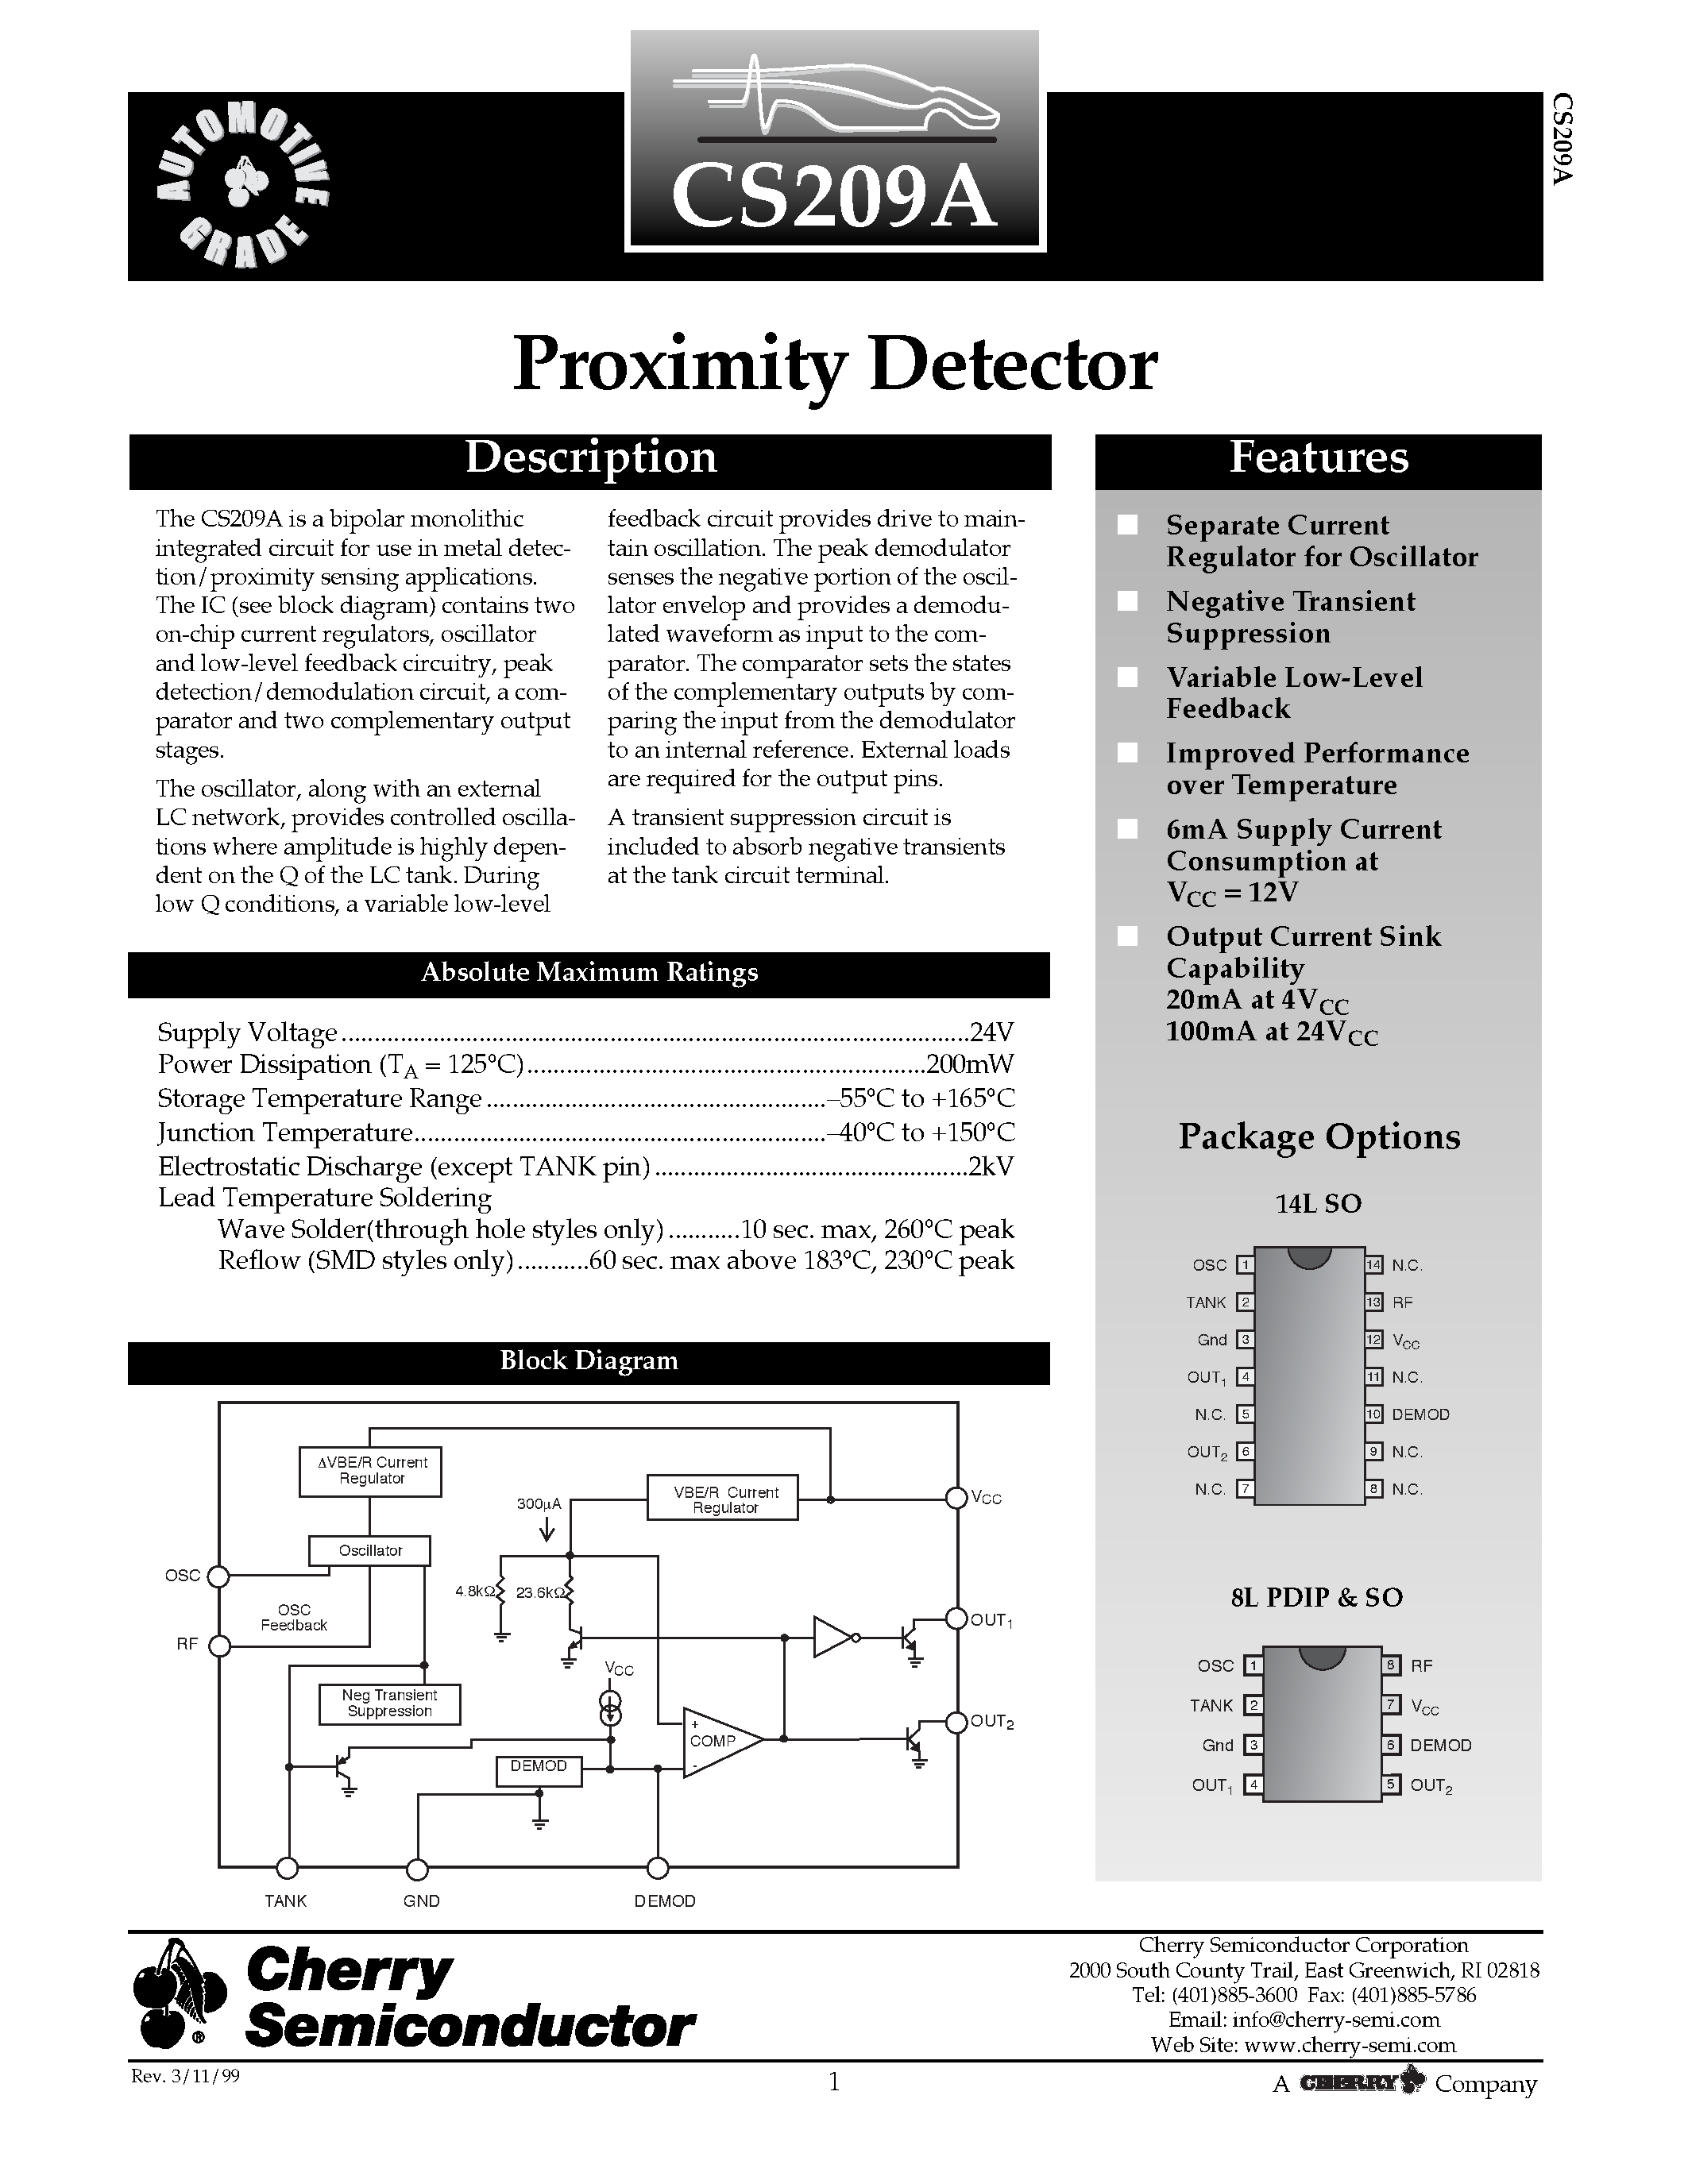 Даташит CS209AYN8 - Proximity Detector страница 1